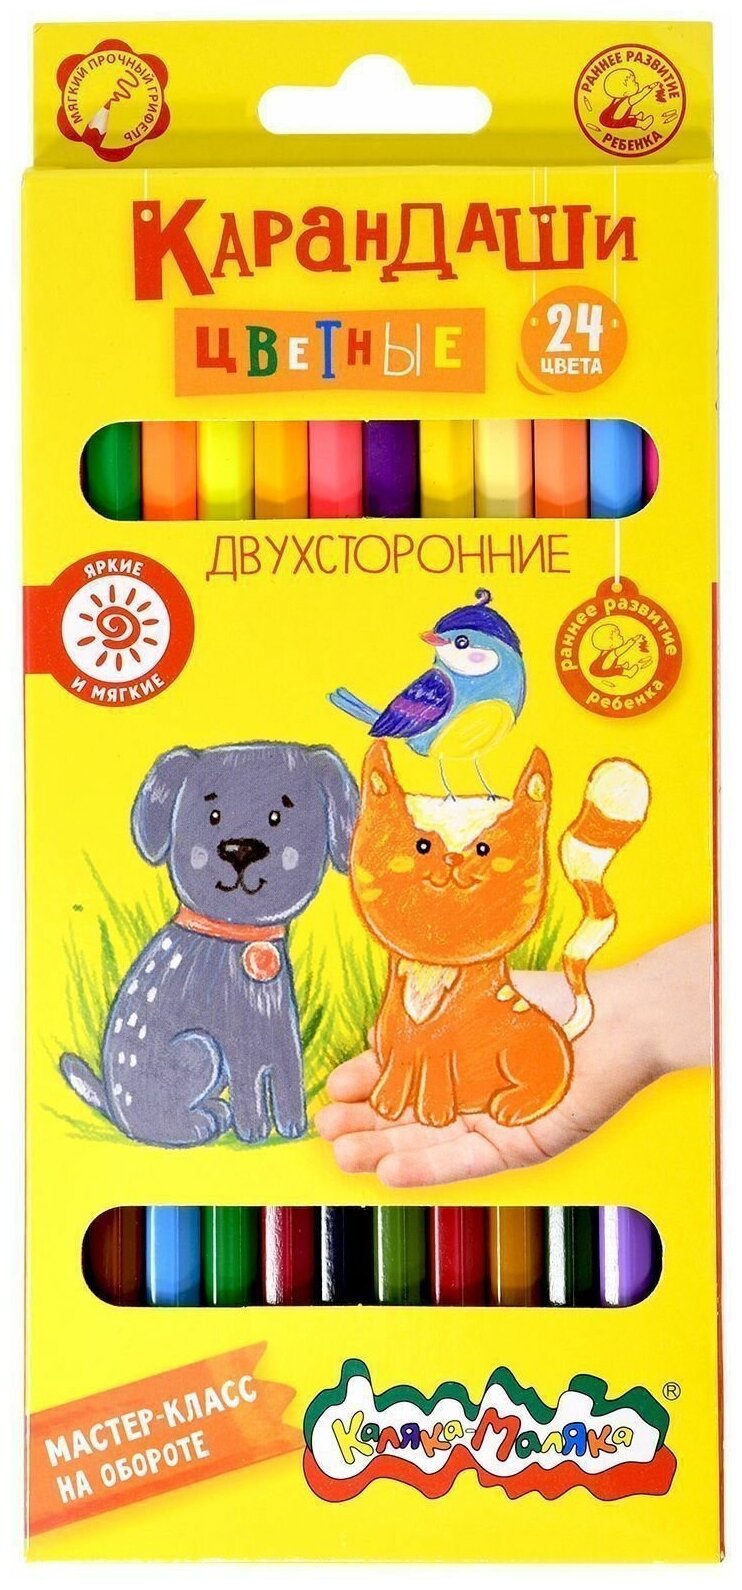 Цветные карандаши Каляка-Маляка двухсторонние 12 штук, 24 цвета, шестигранные, дерево.